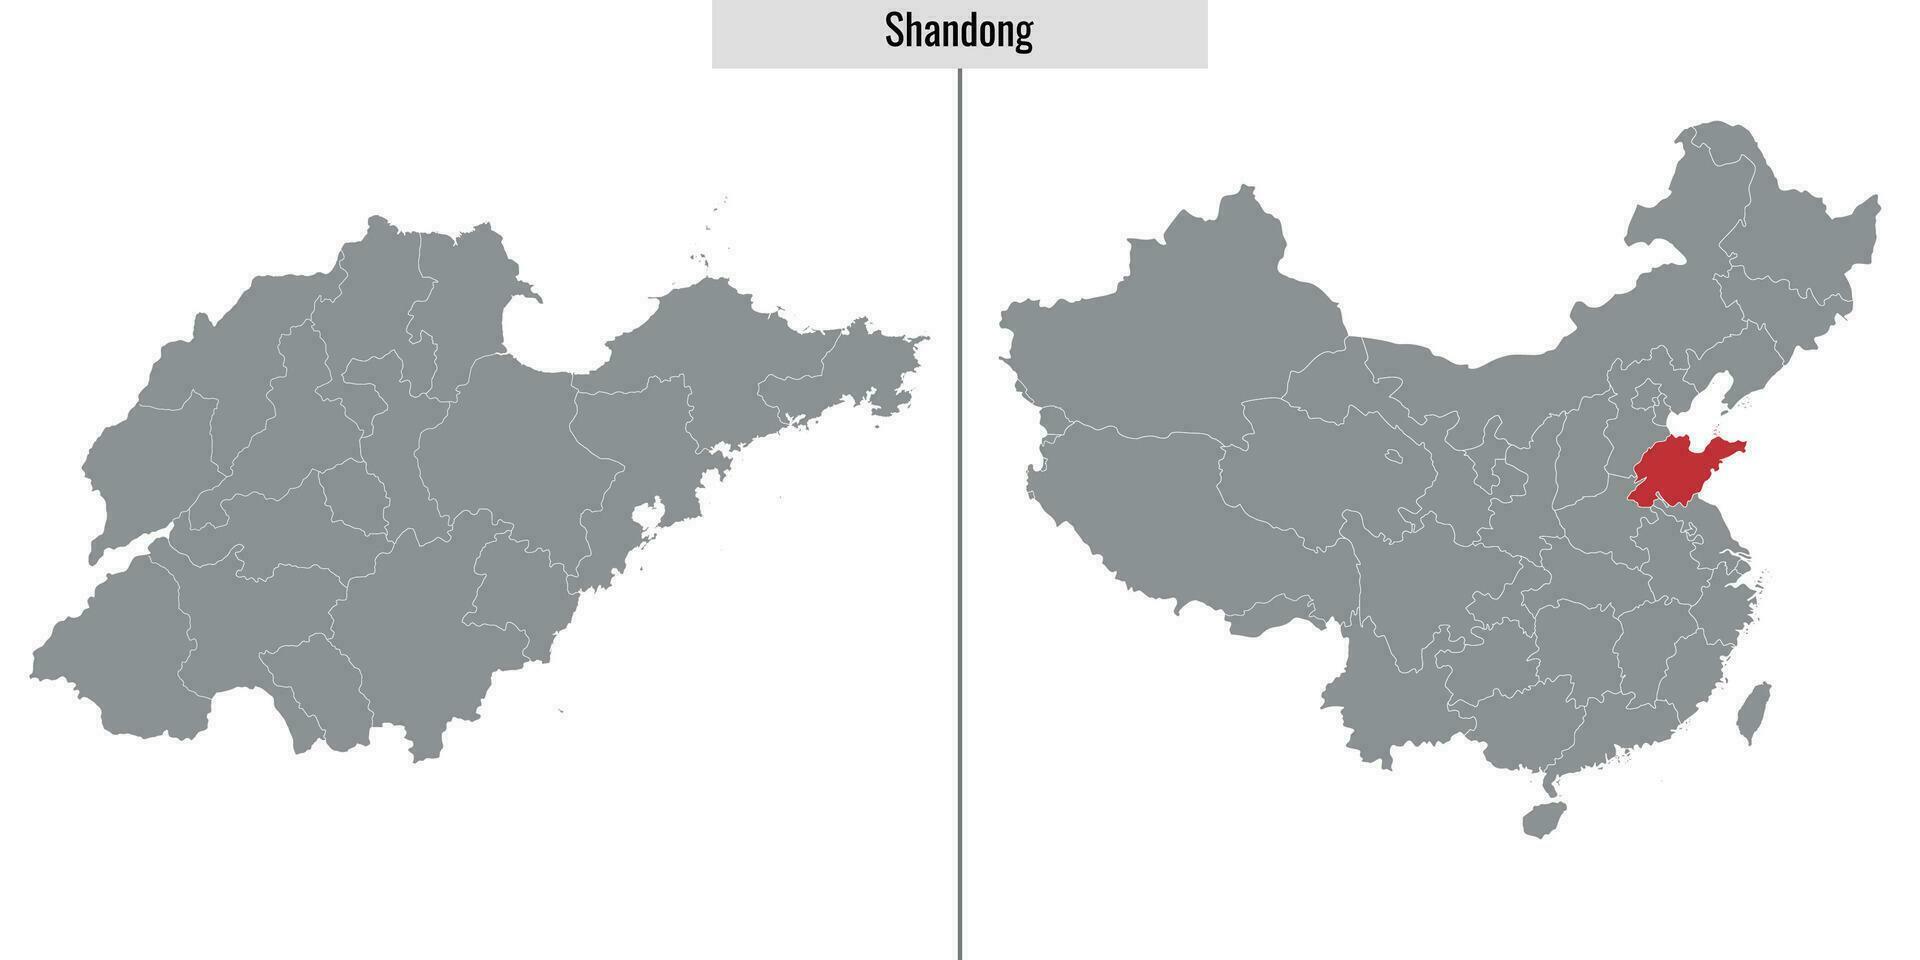 carte province de chine vecteur